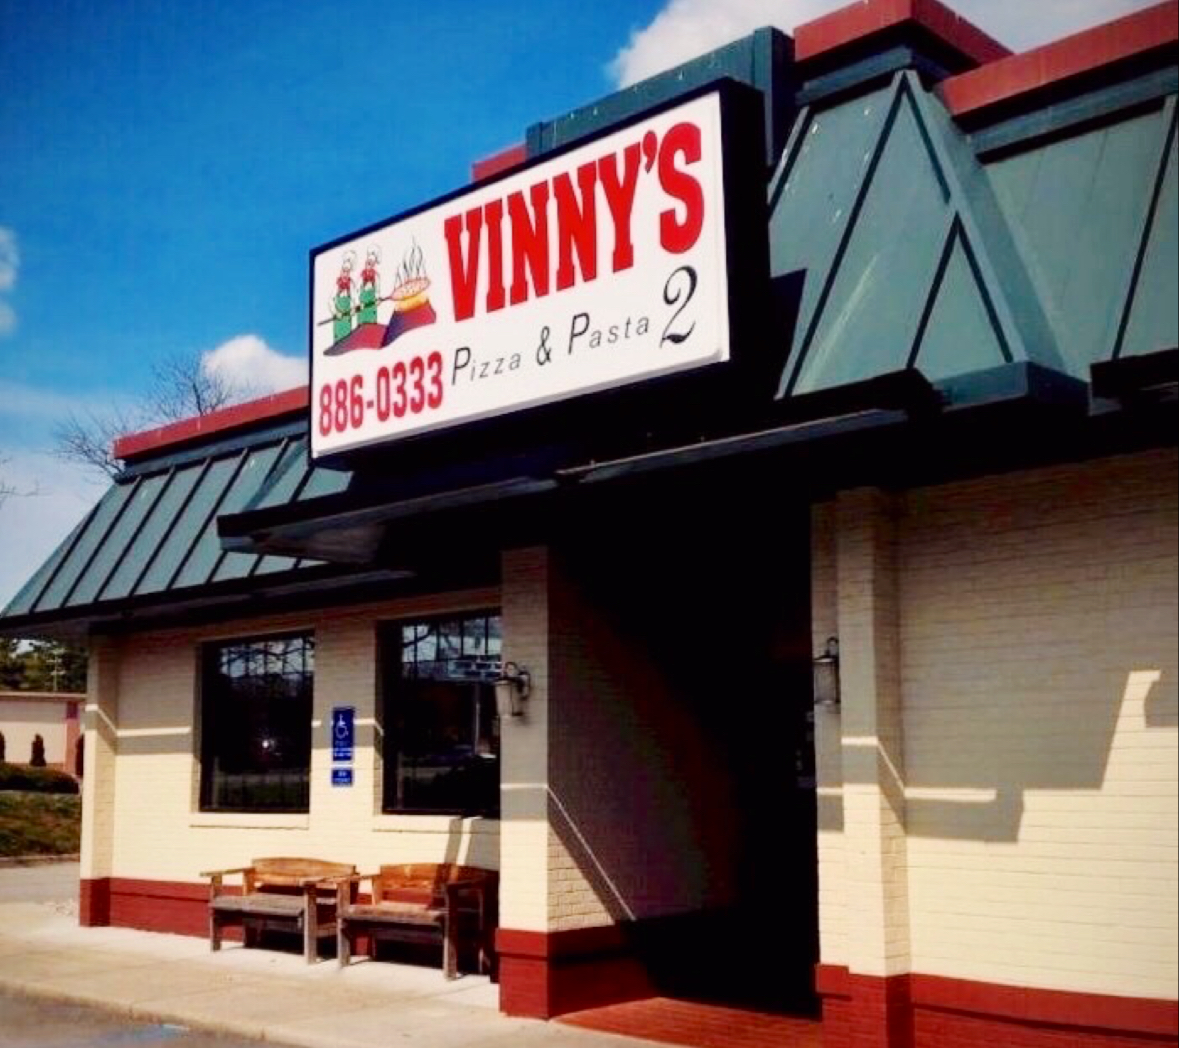 Vinny’s Pizza & Pasta 2